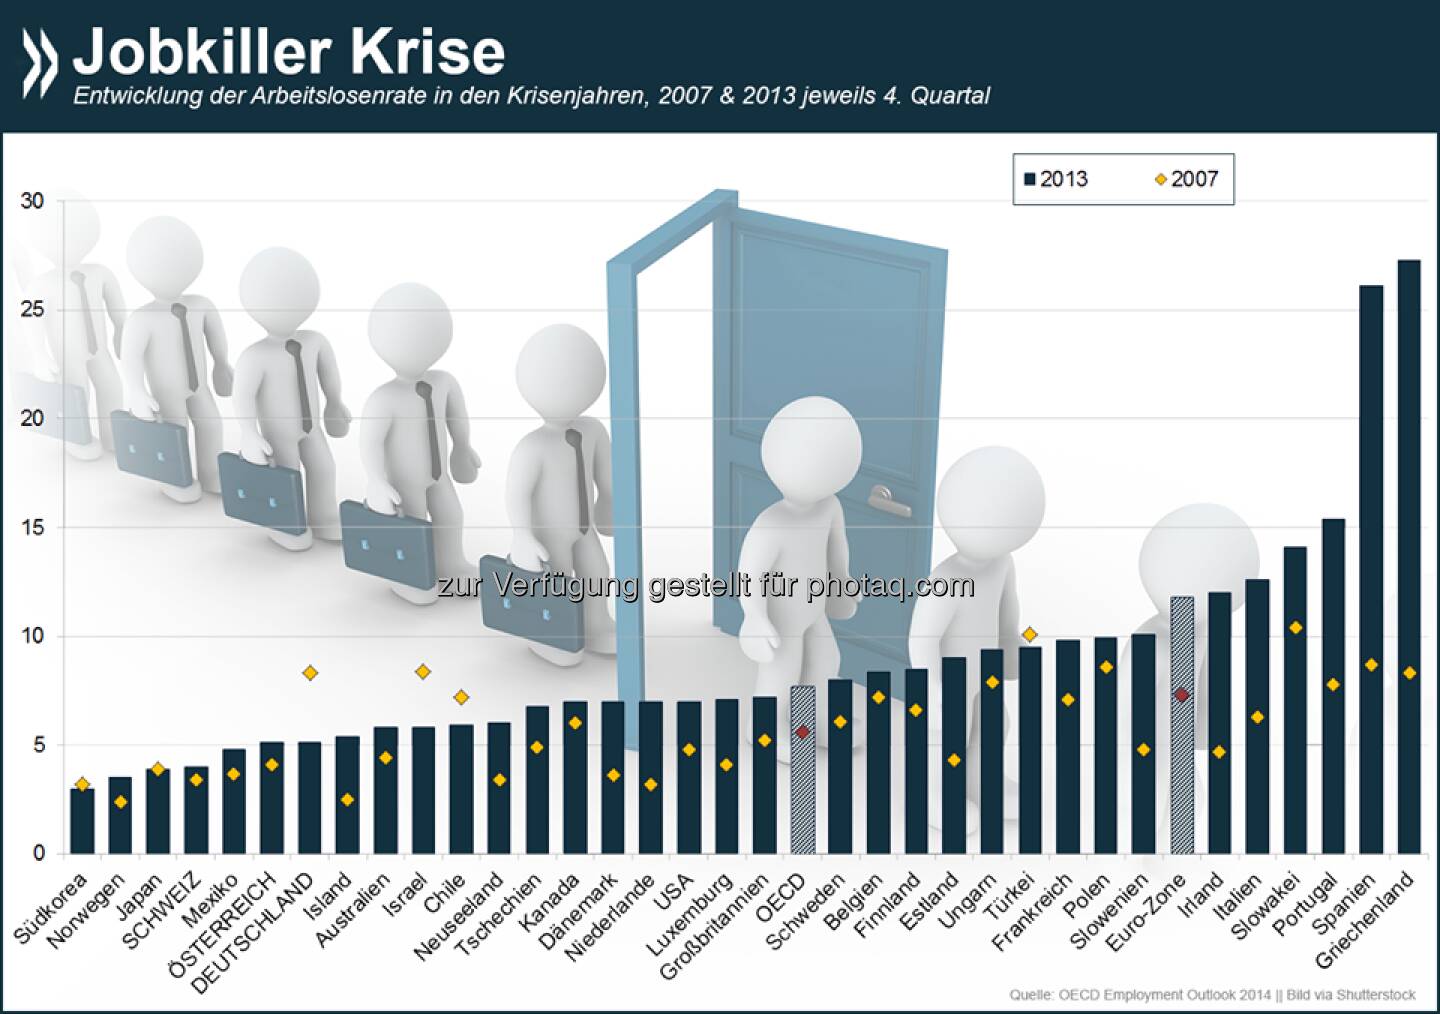 Krisenfest: Deutschland ist eines von nur fünf OECD-Ländern, in denen sich der Arbeitsmarkt während der Wirtschaftskrise entspannt hat. Insgesamt sind in der OECD heute zwölf Millionen mehr Menschen ohne Job als noch 2007.

Weitere Informationen zur Beschäftigung in den OECD-Ländern unter: http://bit.ly/1A4CZep  Source: http://twitter.com/oecdstatistik